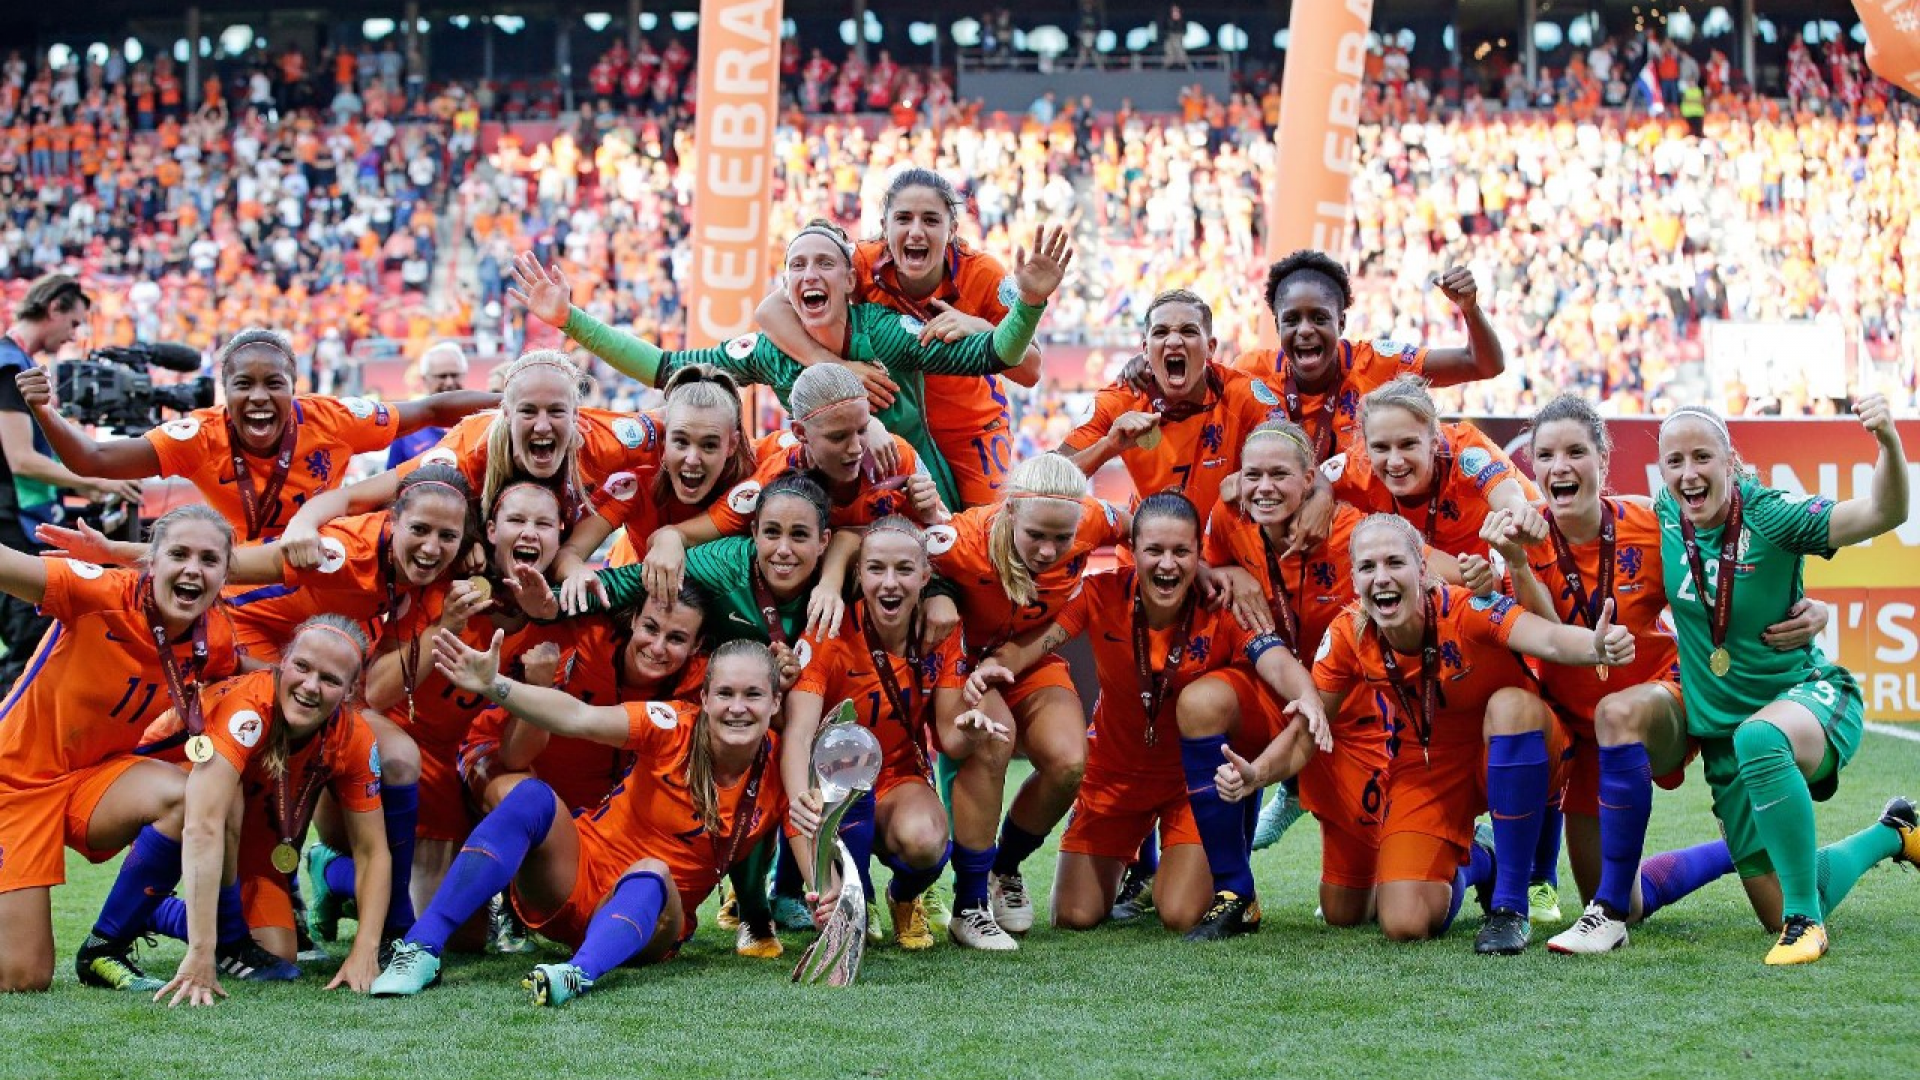 Oranjevrouwen verkozen tot Sportploeg van het Jaar | OnsOranje